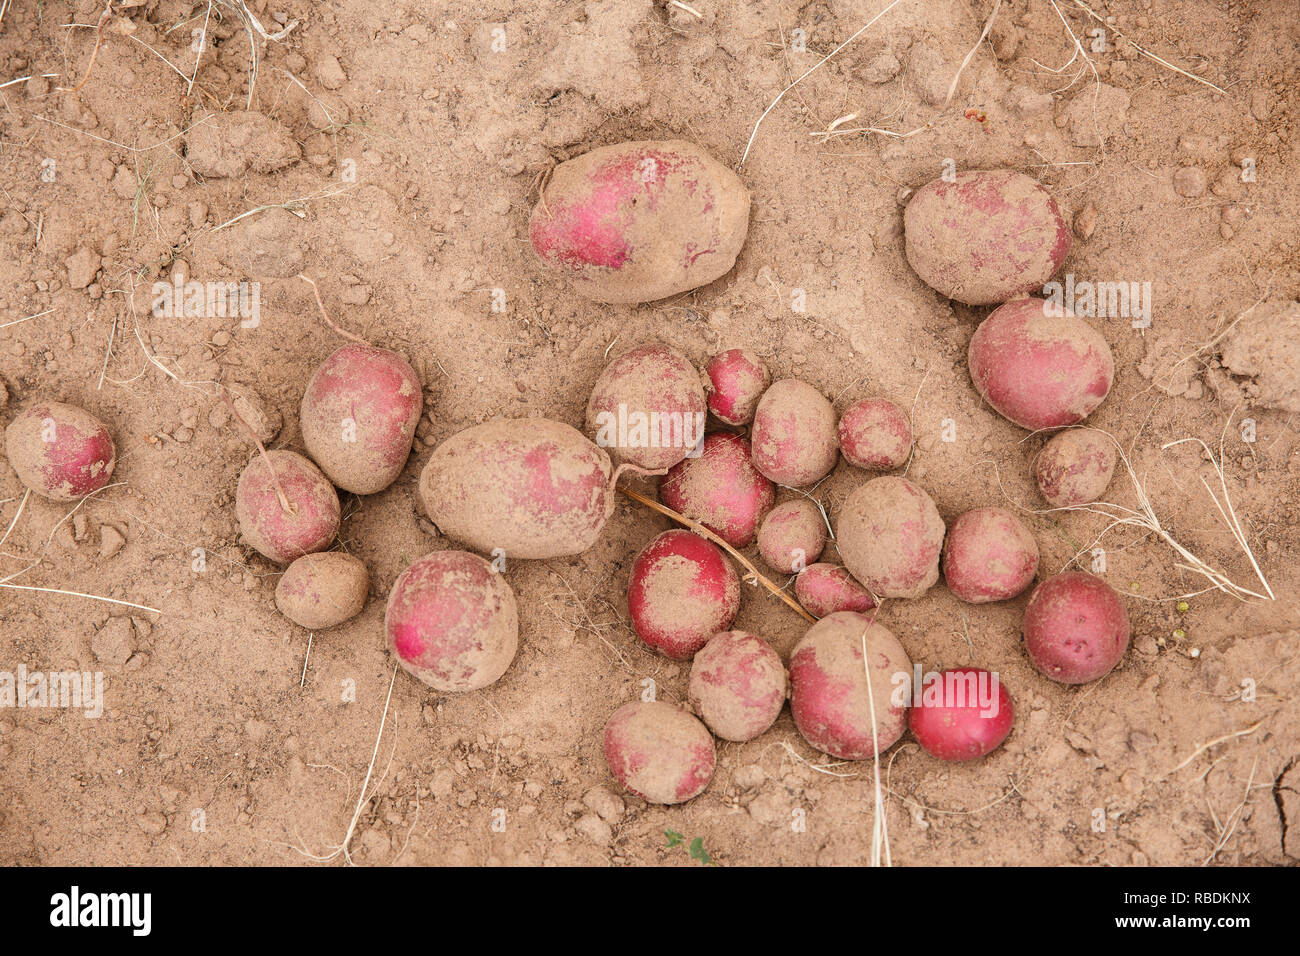 Ein Haufen gerade geerntete Bio rote Kartoffeln sitzen auf einem Bauernhof Feld Stockfoto